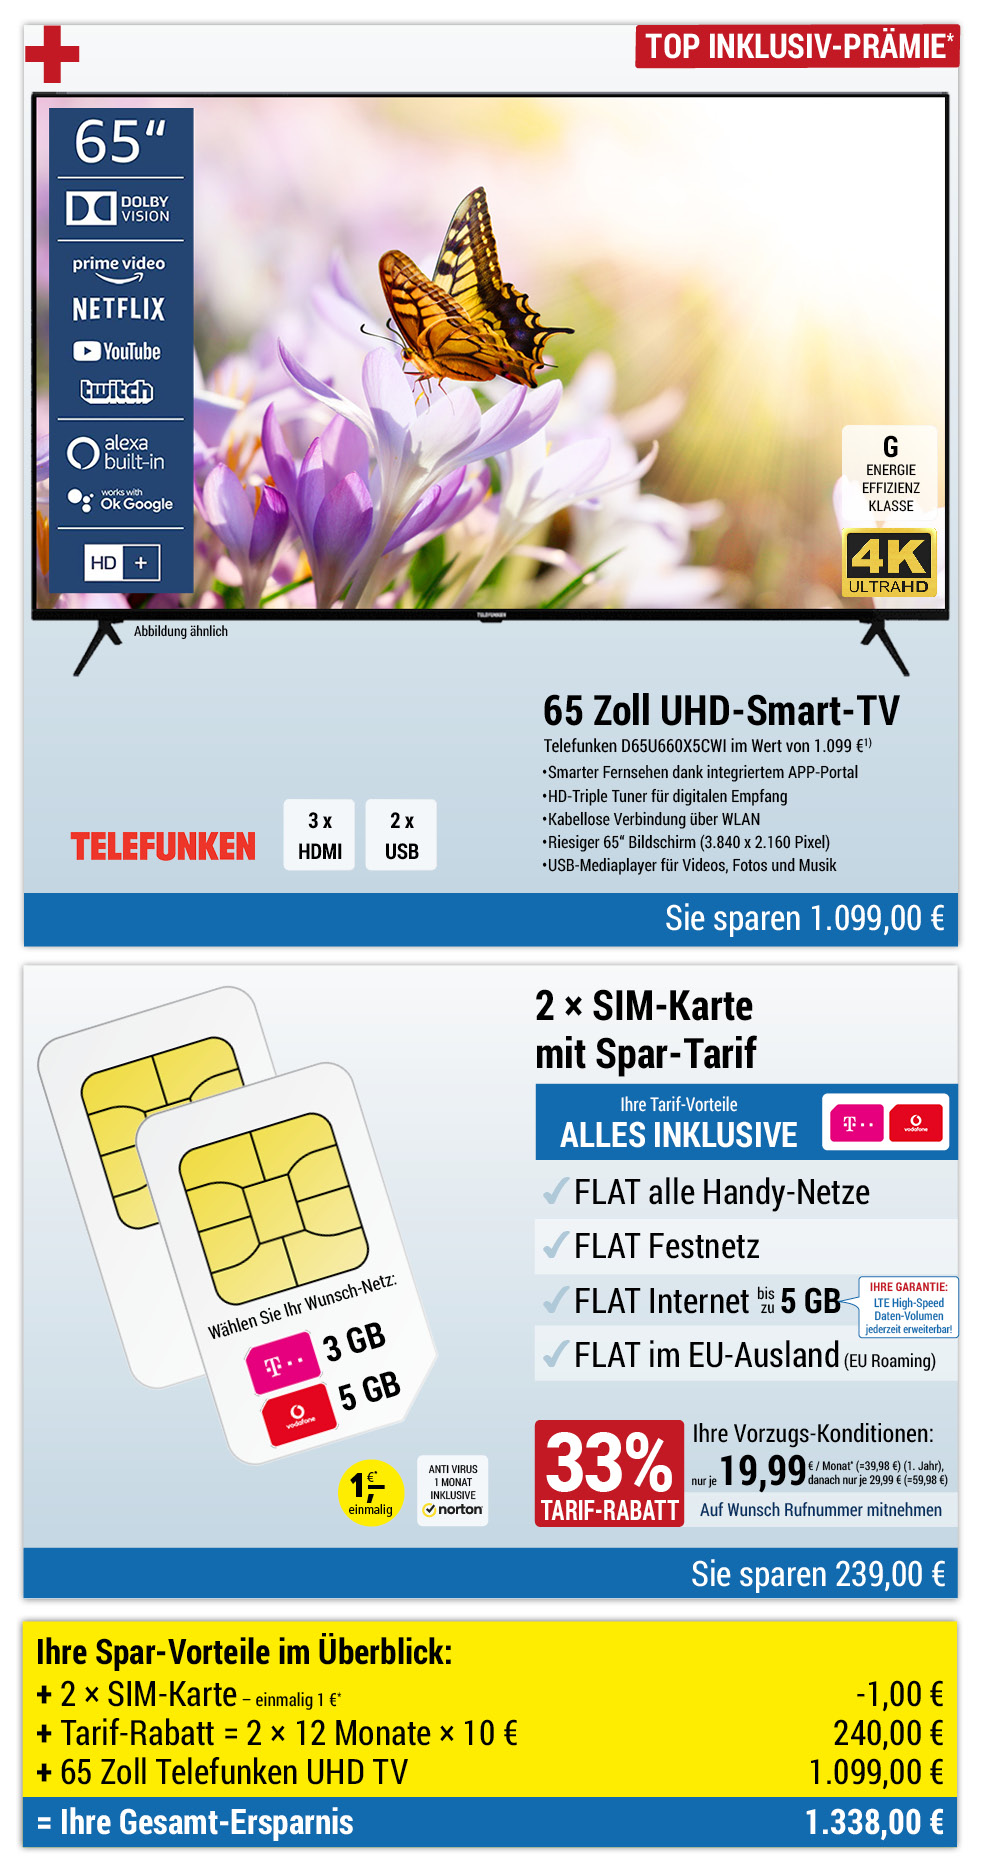 Für nur 1 €*: 65 Zoll UHD-TV + 2 × Sim-Karte mit ALL NET FLAT für je 19,99 €/Monat im ersten Jahr